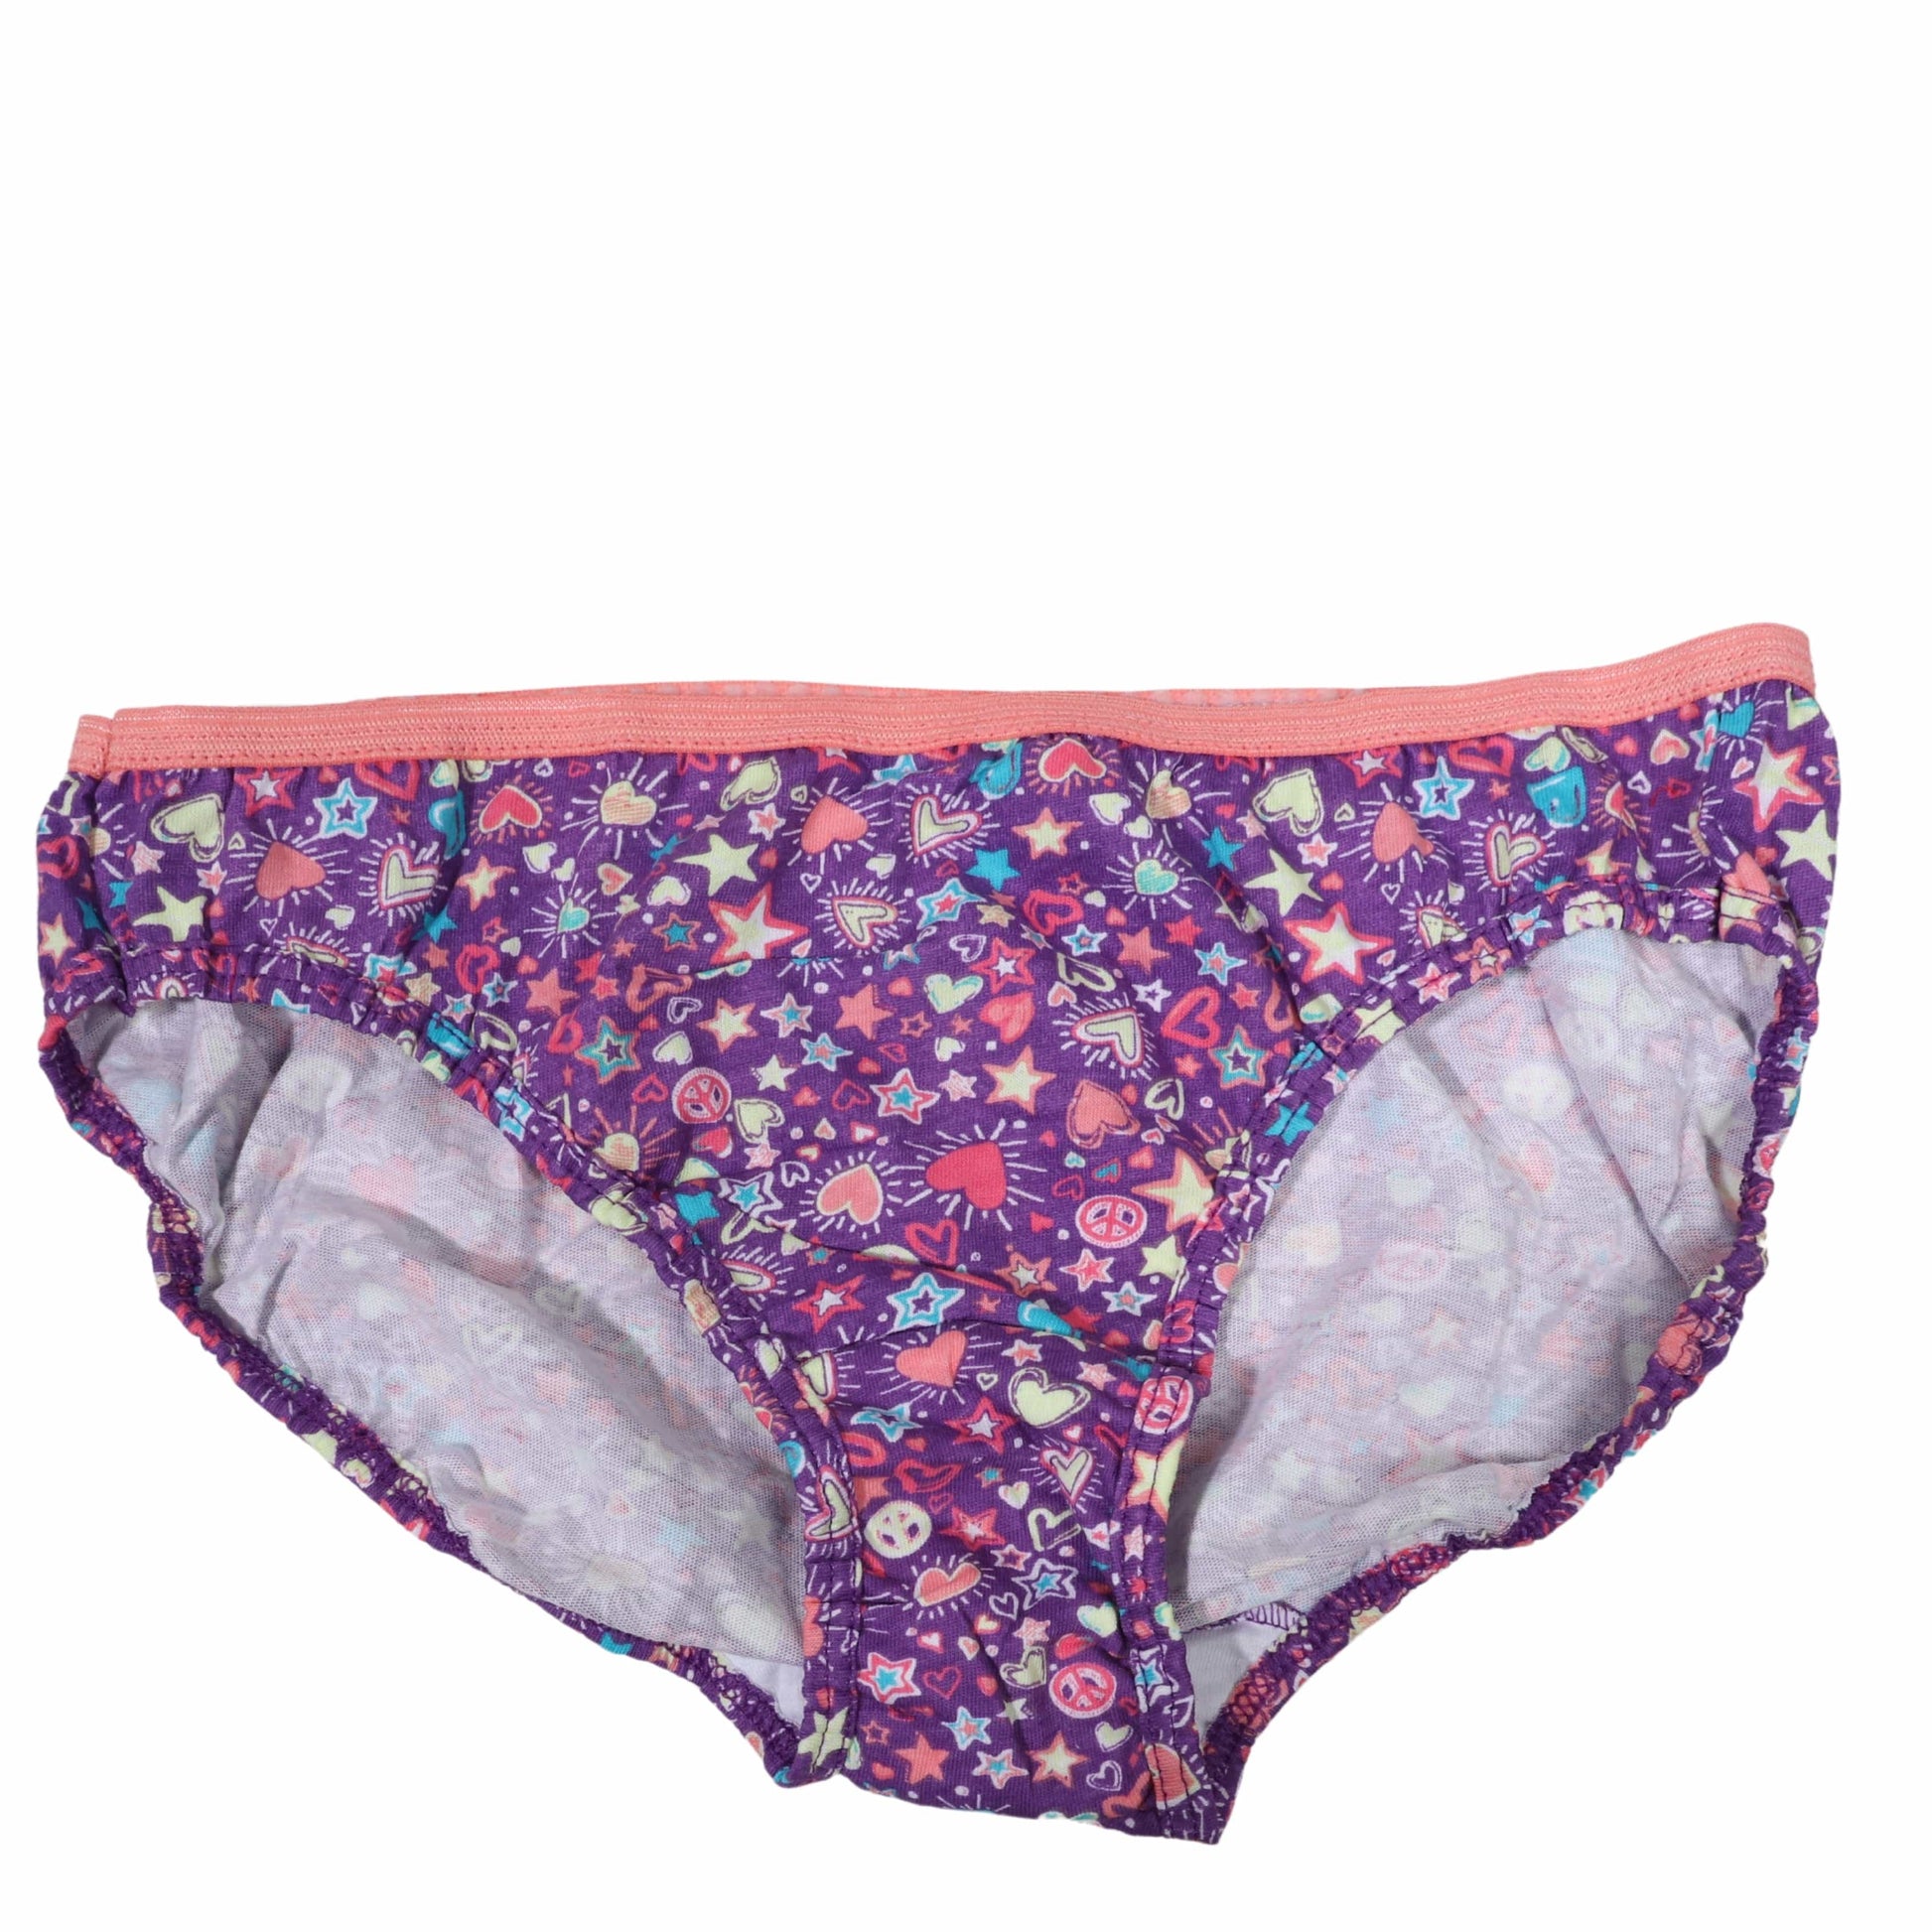 https://brandsandbeyond.me/cdn/shop/products/hanes-girls-underwear-hanes-casual-printed-panties-31039790678051.jpg?v=1670336589&width=1946